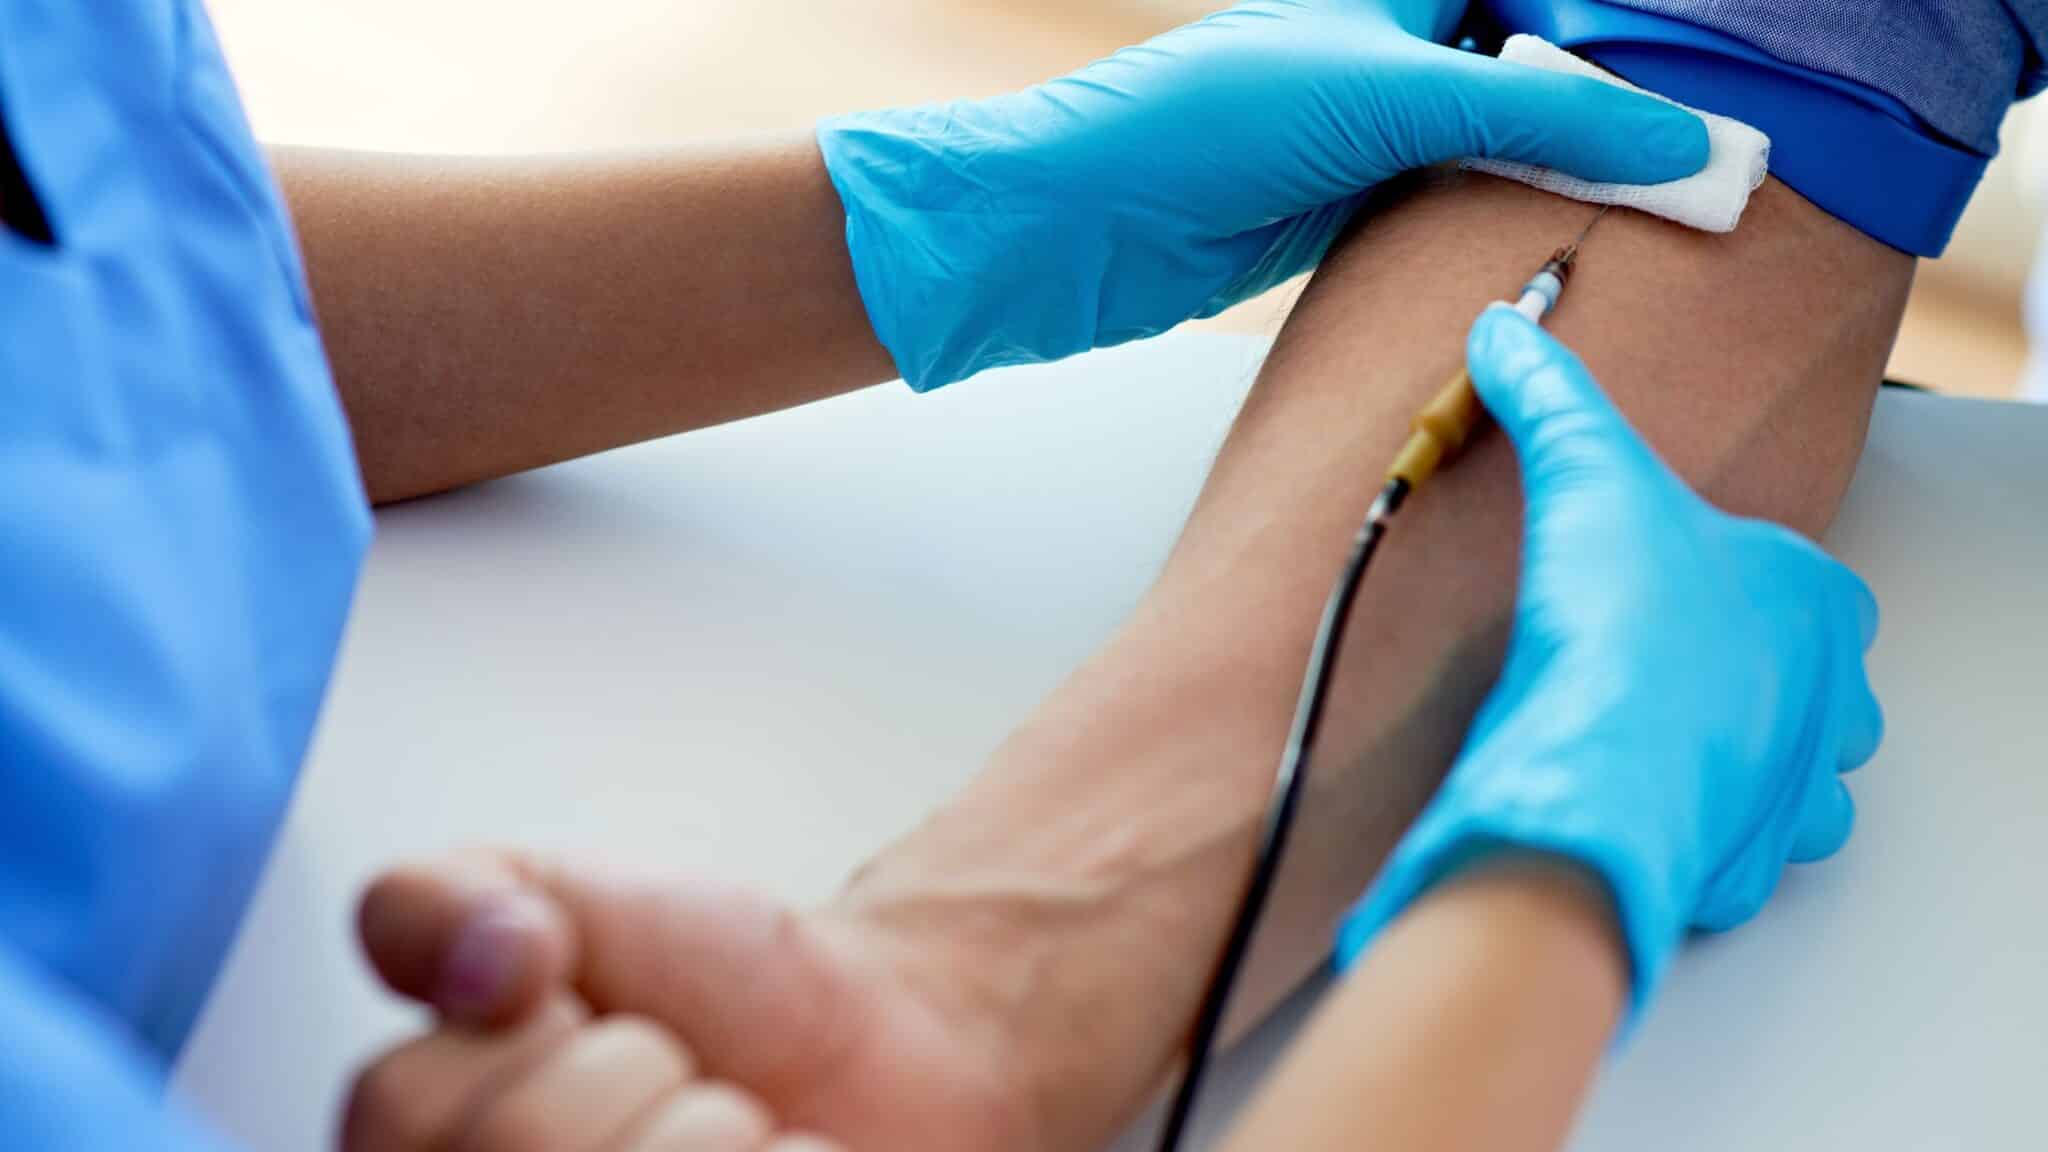 Un médecin muni de gants bleus réalise une prise de sang, piquant le pli du coude d'un patient avec une seringue.